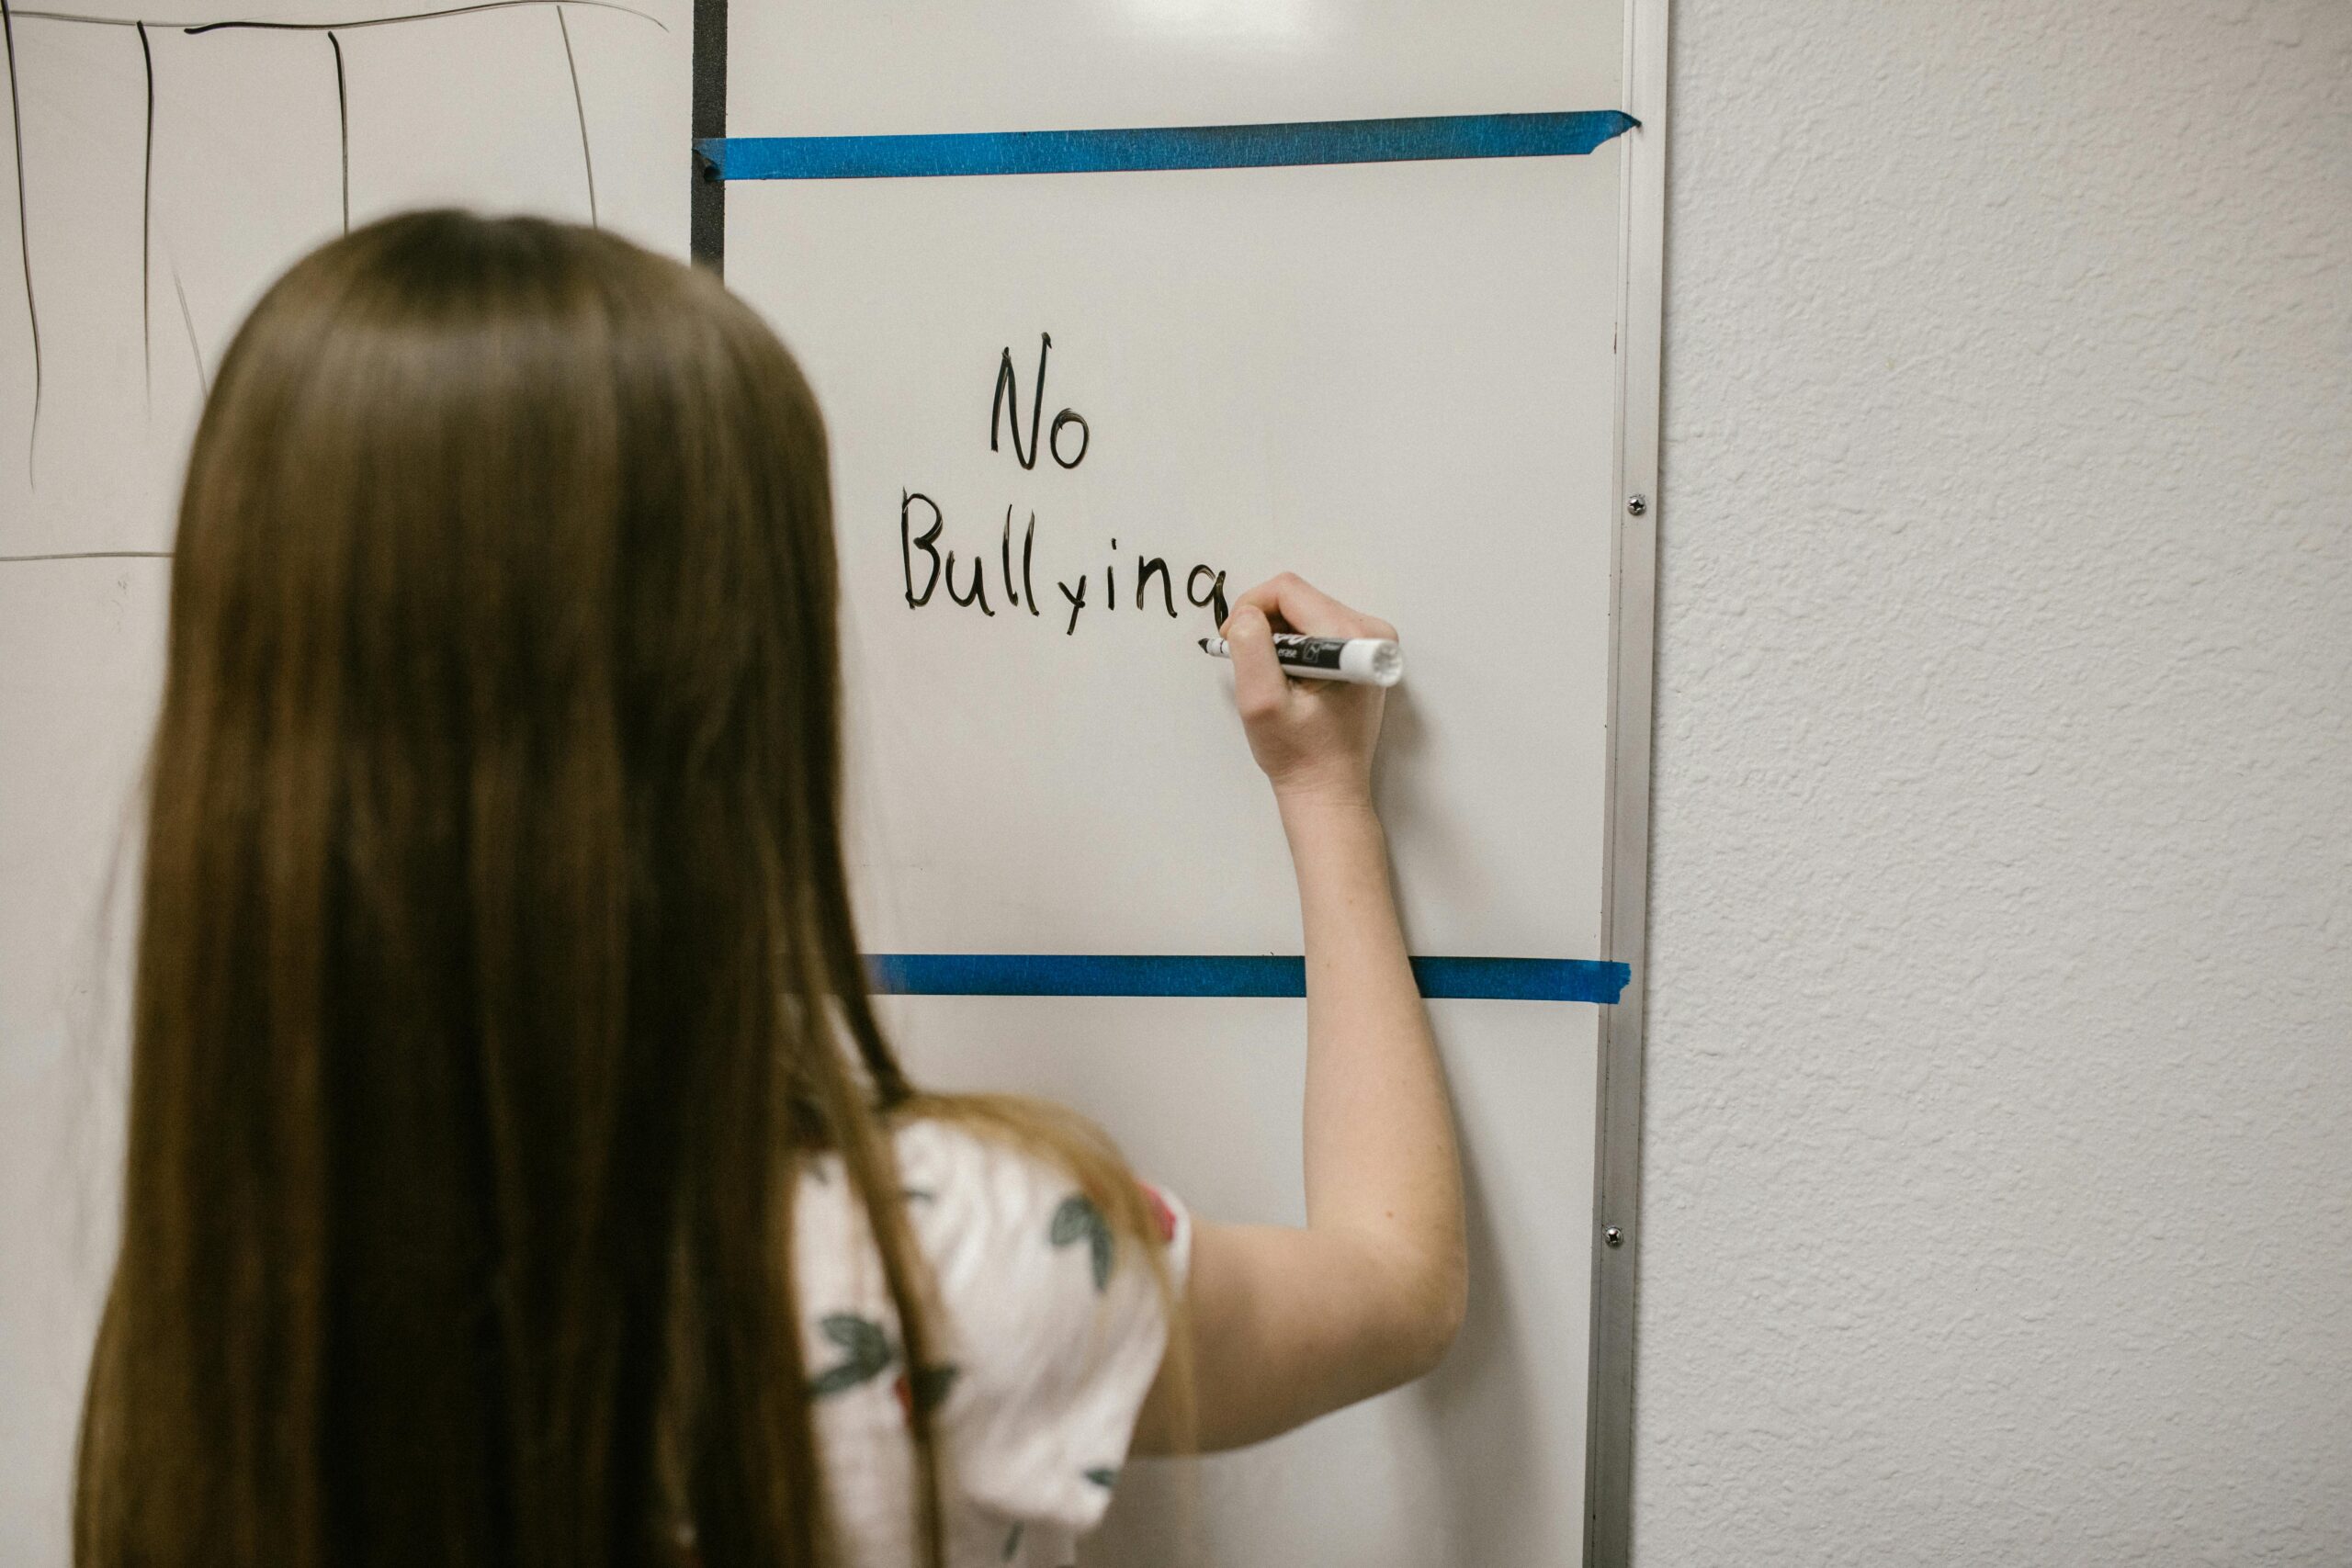 Εθνική δράση κατά του bullying: Πλατφόρμα καταγγελιών και αυστηροποίηση συνεπειών – Σήμερα ανακοινώνονται τα νέα μέτρα